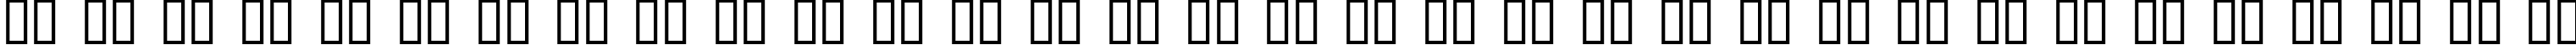 Пример написания русского алфавита шрифтом Action Force Normal